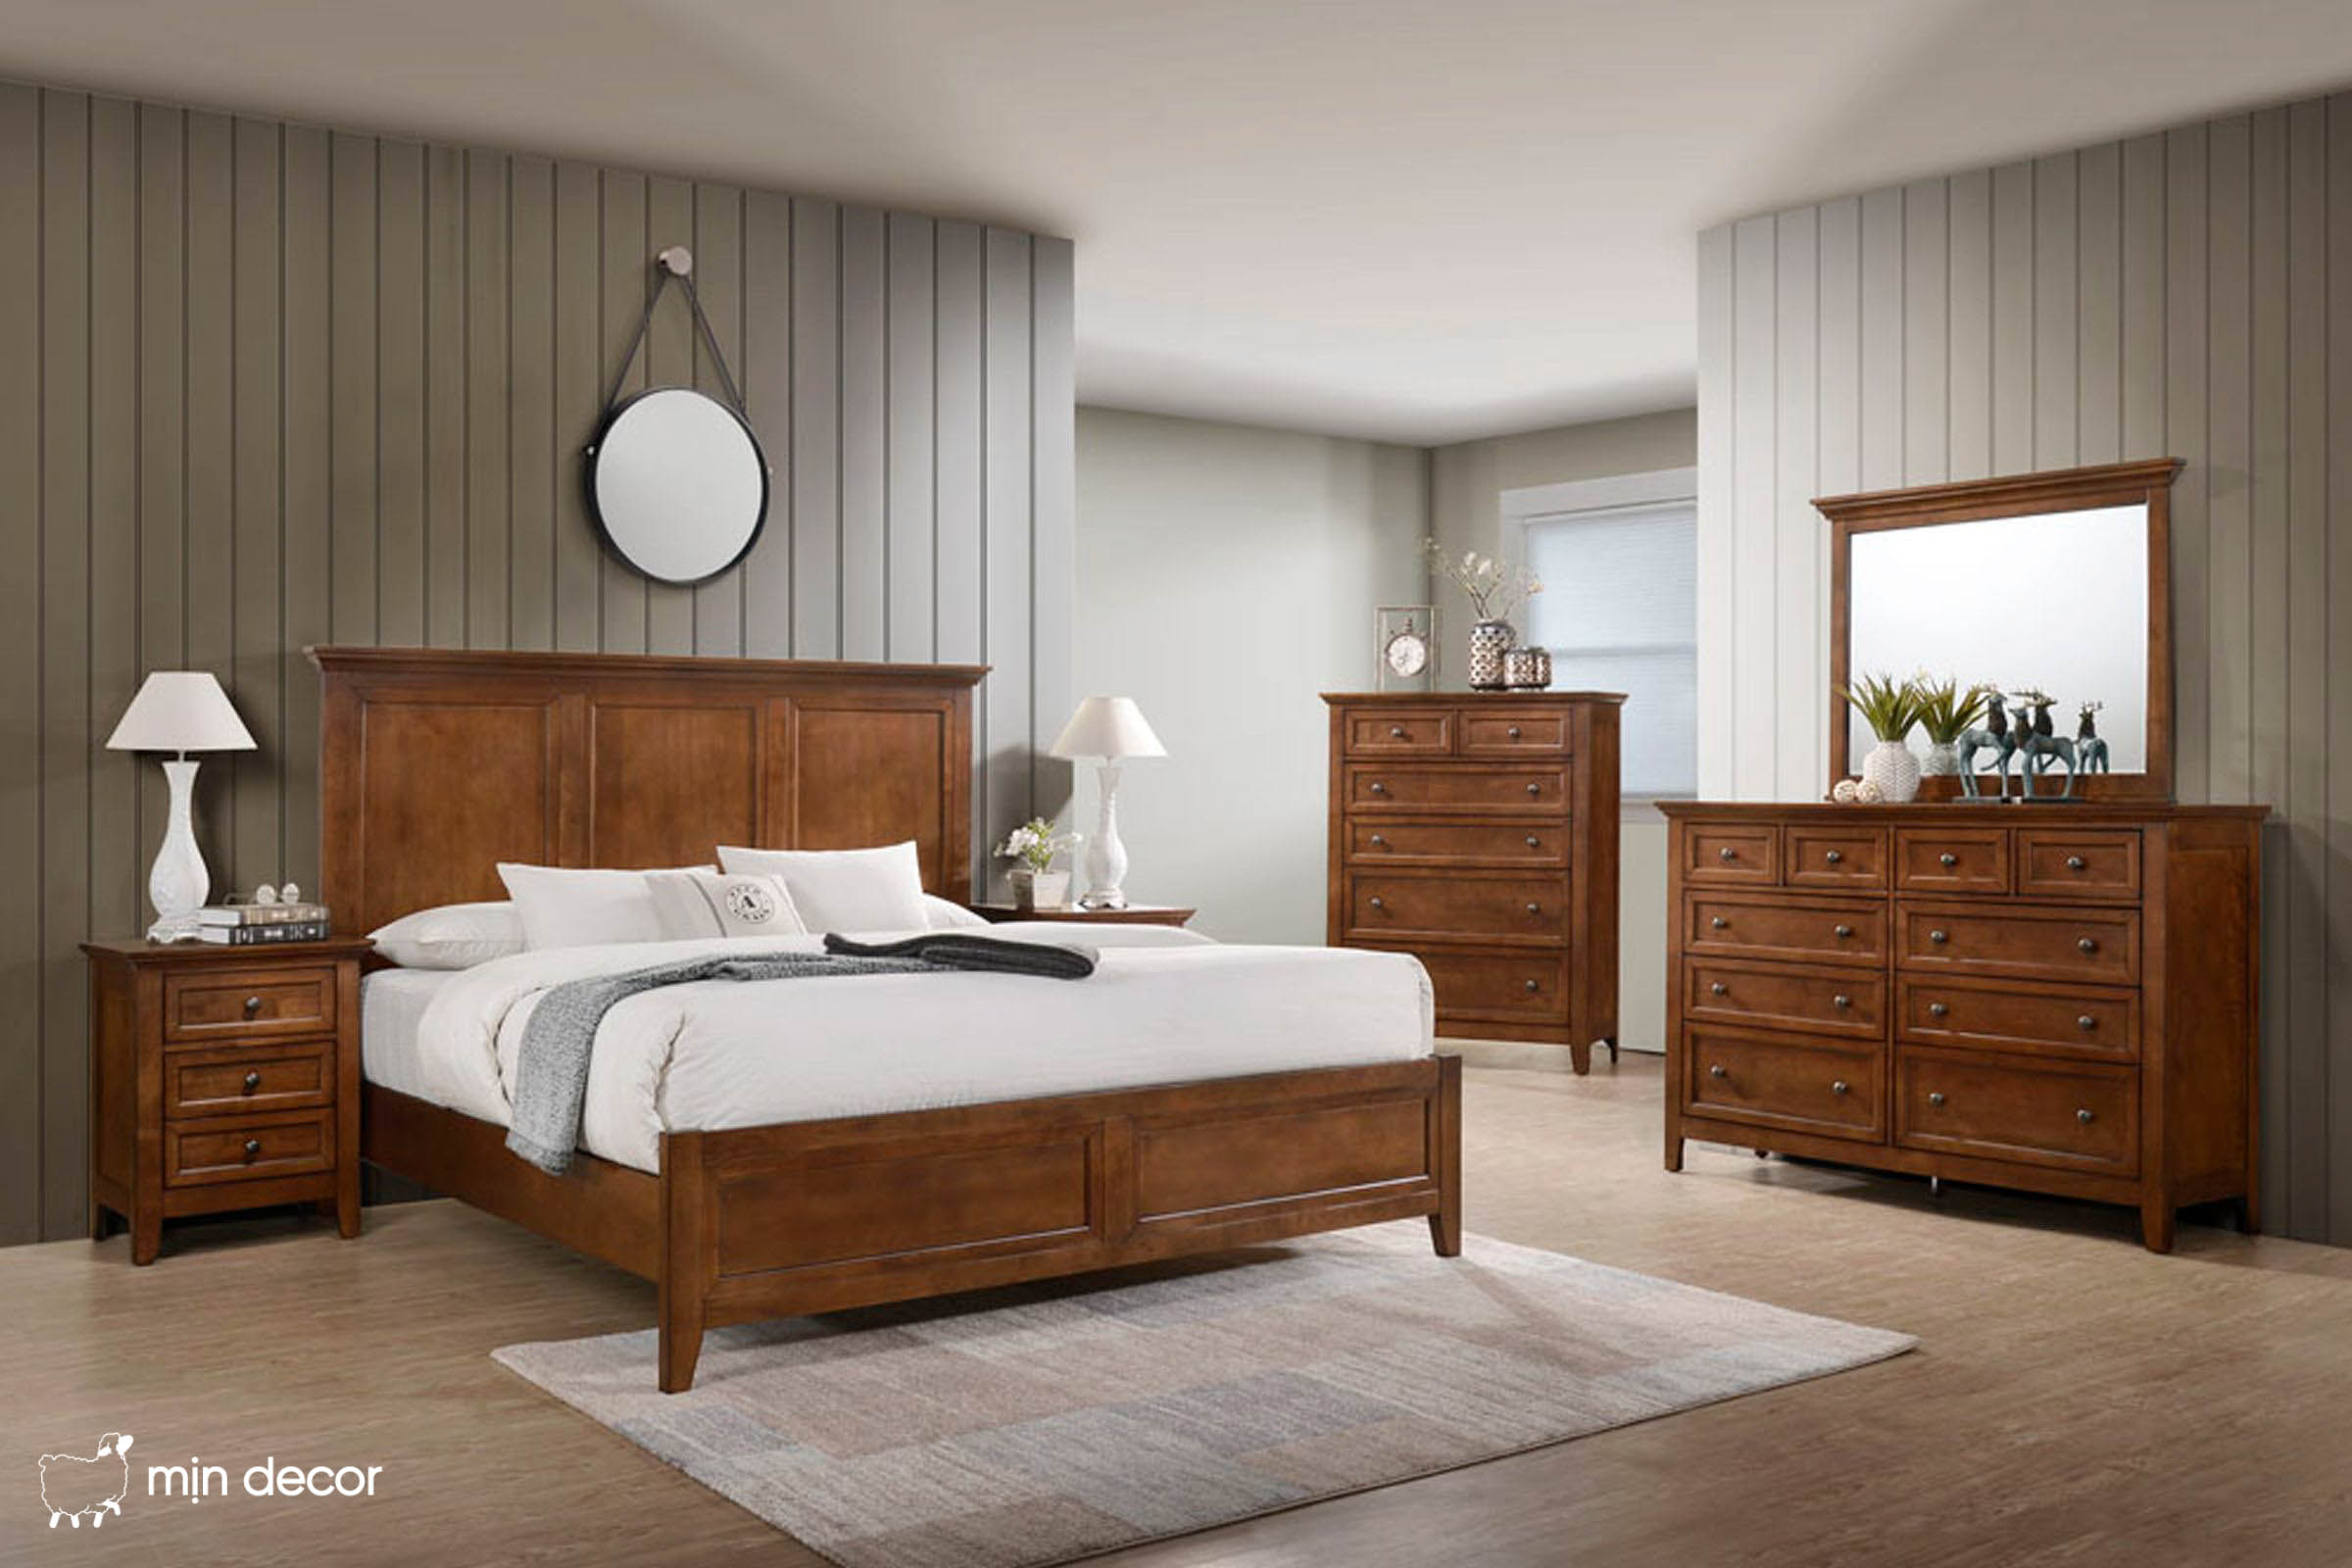 Các mẫu giường gỗ 1m6 – 2m bán chạy nhất trên thị trường